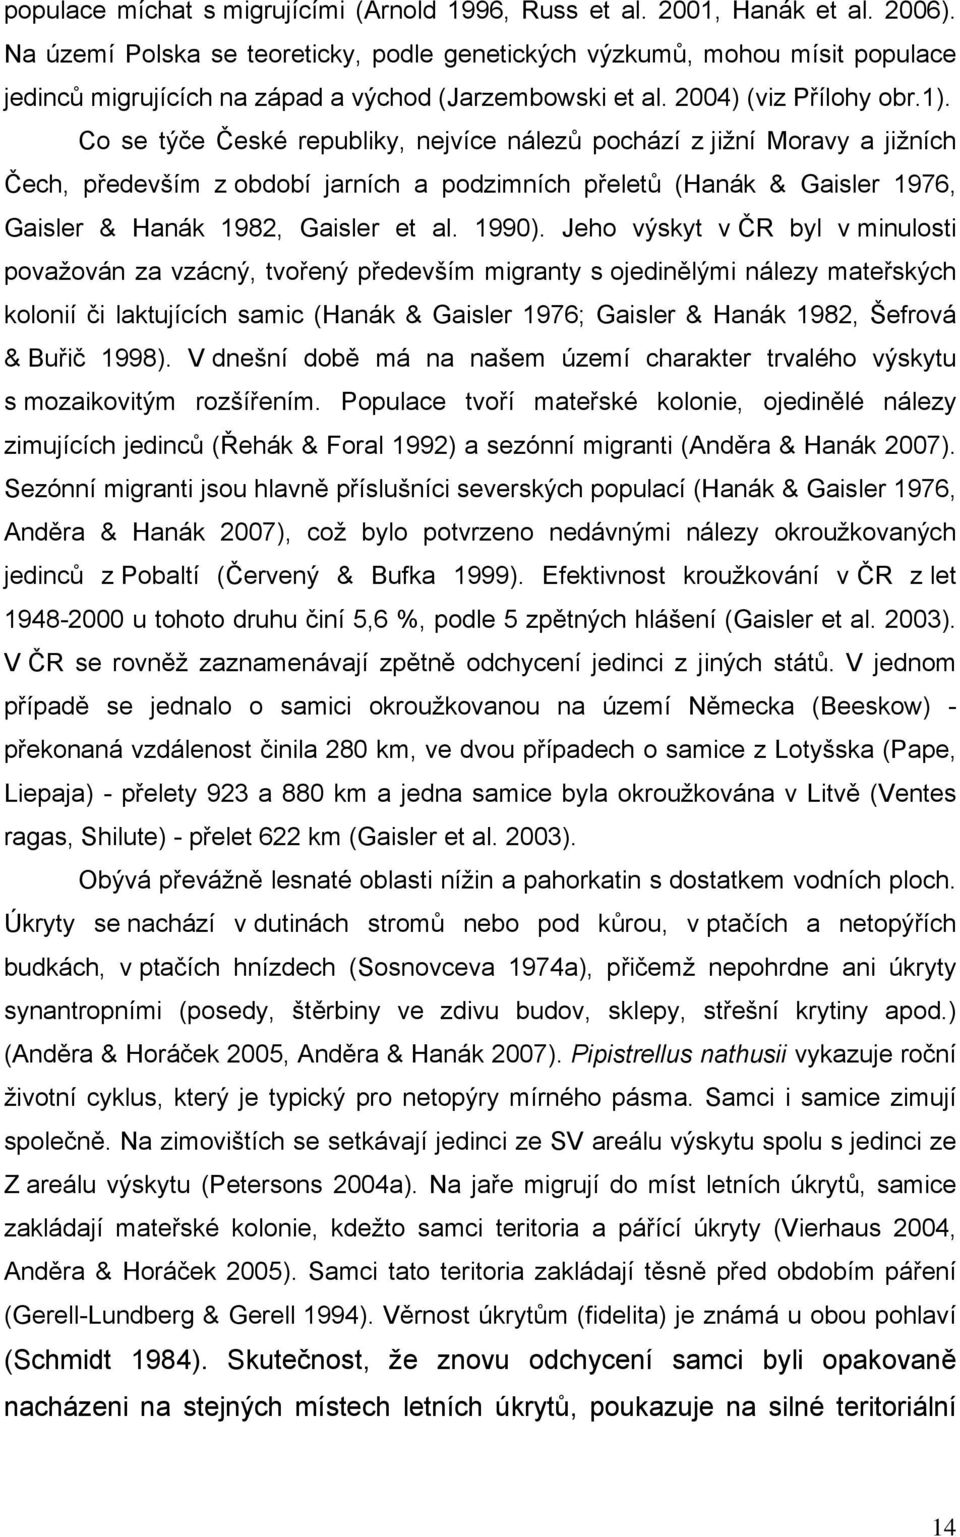 Co se týče České republiky, nejvíce nálezů pochází z jižní Moravy a jižních Čech, především z období jarních a podzimních přeletů (Hanák & Gaisler 1976, Gaisler & Hanák 1982, Gaisler et al. 1990).